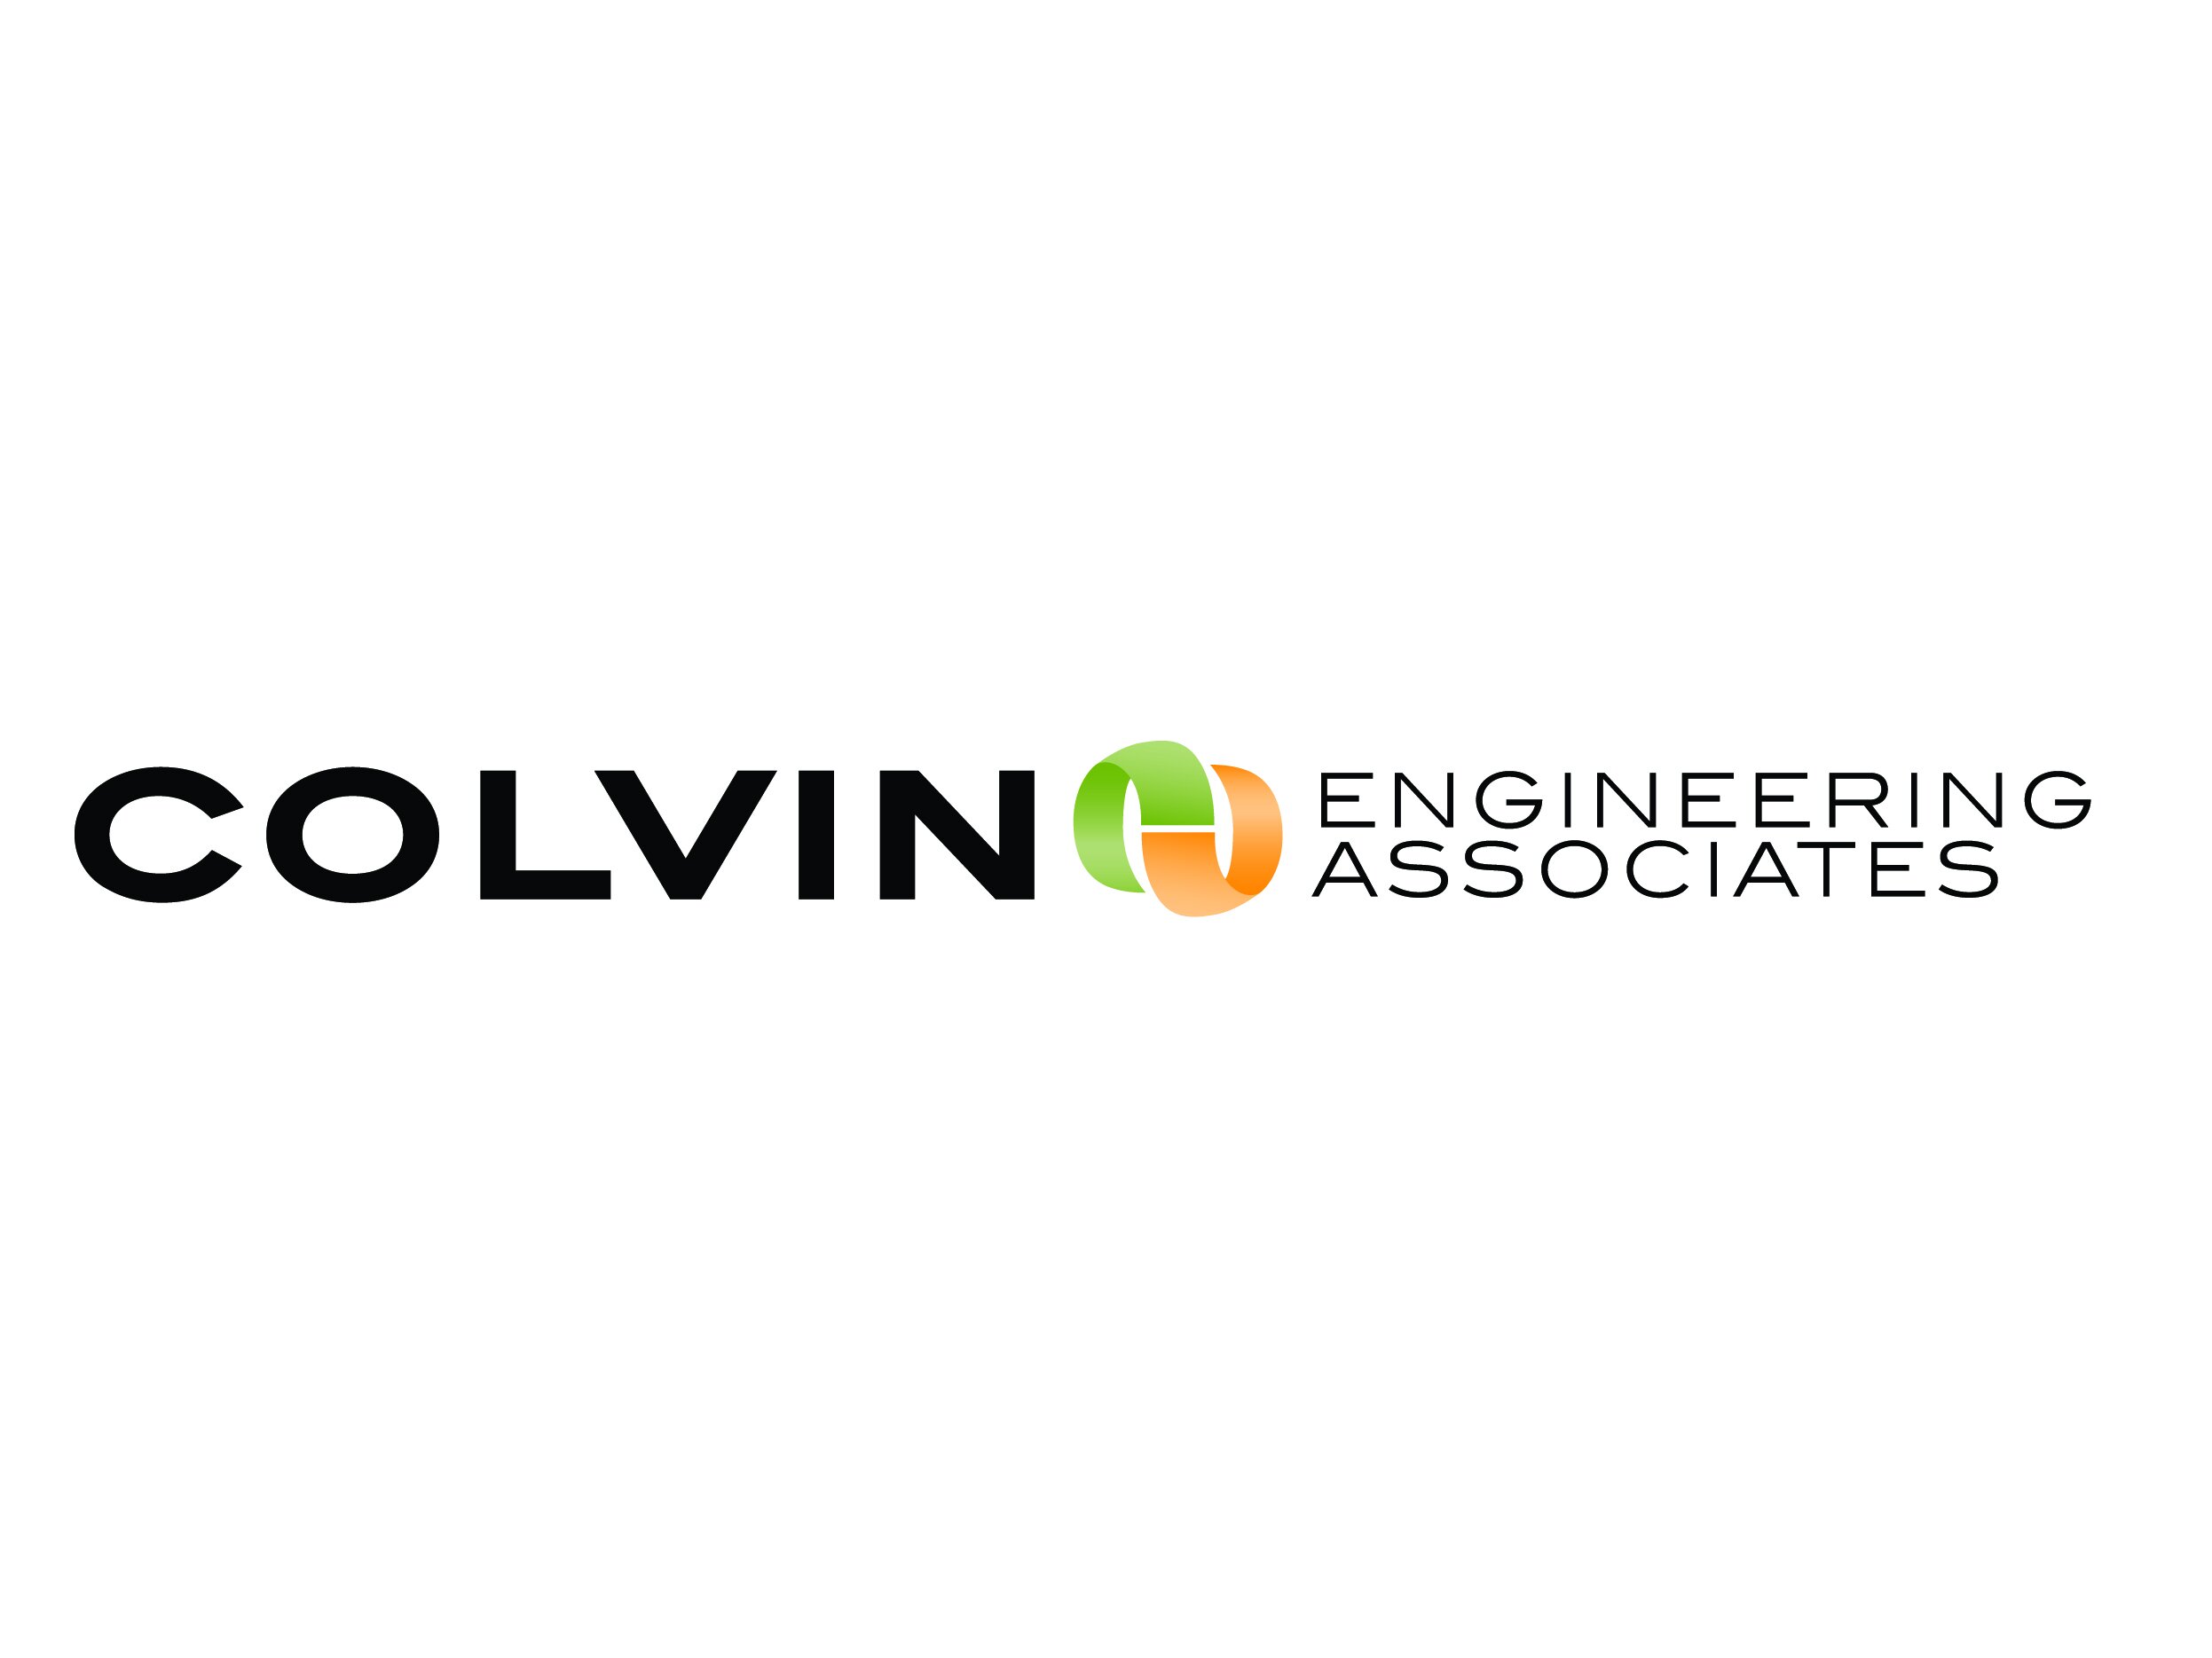 Colvin Engineering Associates logo.jpg